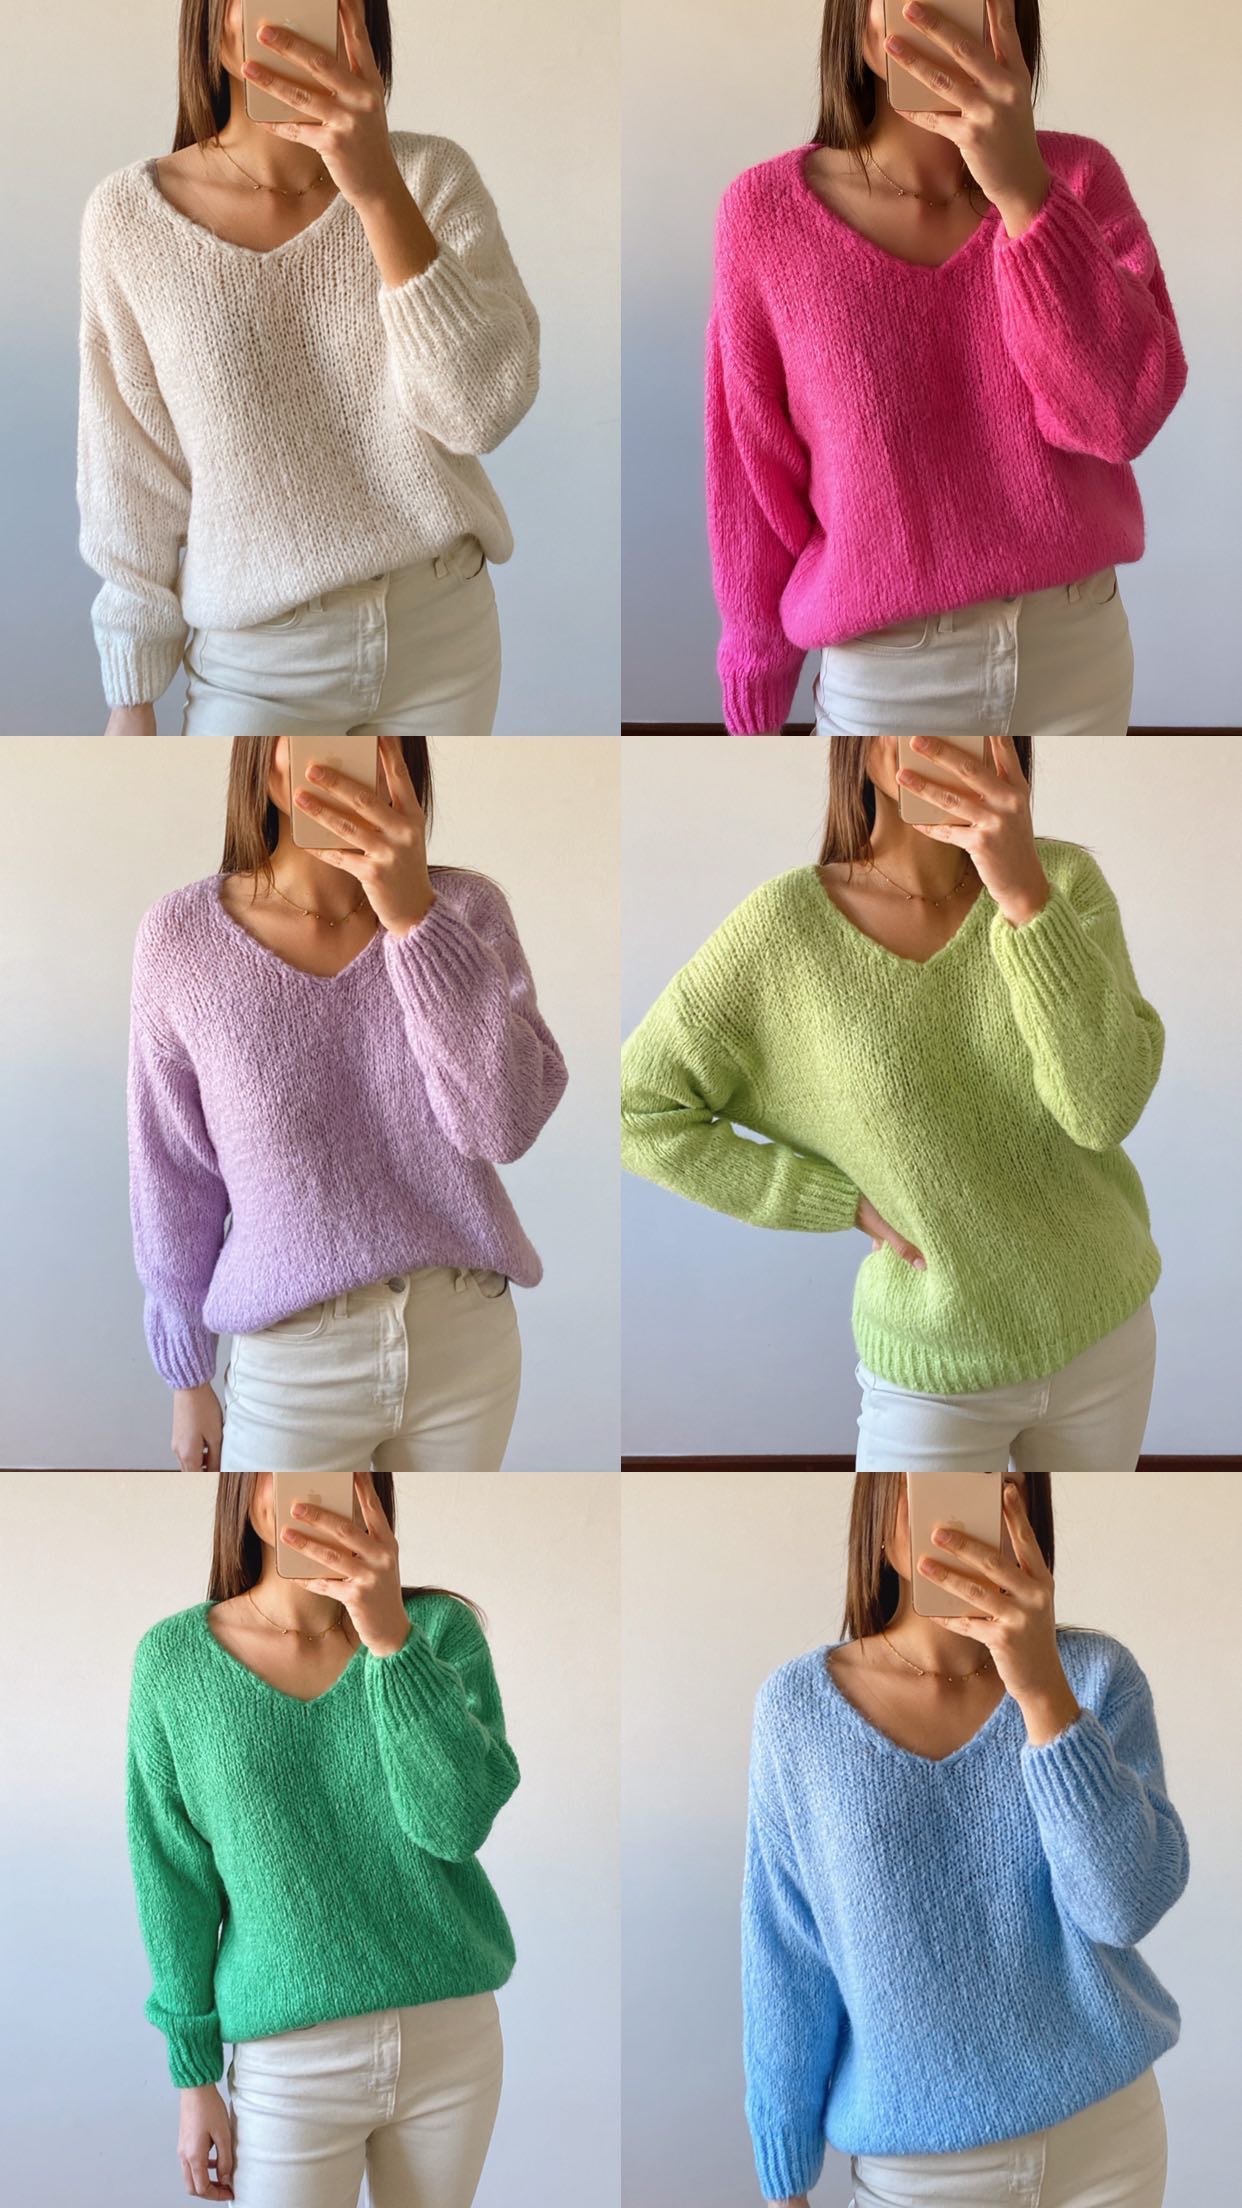 1 camisola, 6 cores 🌈

Difícil vai ser escolher! Qual é a vossa preferida?